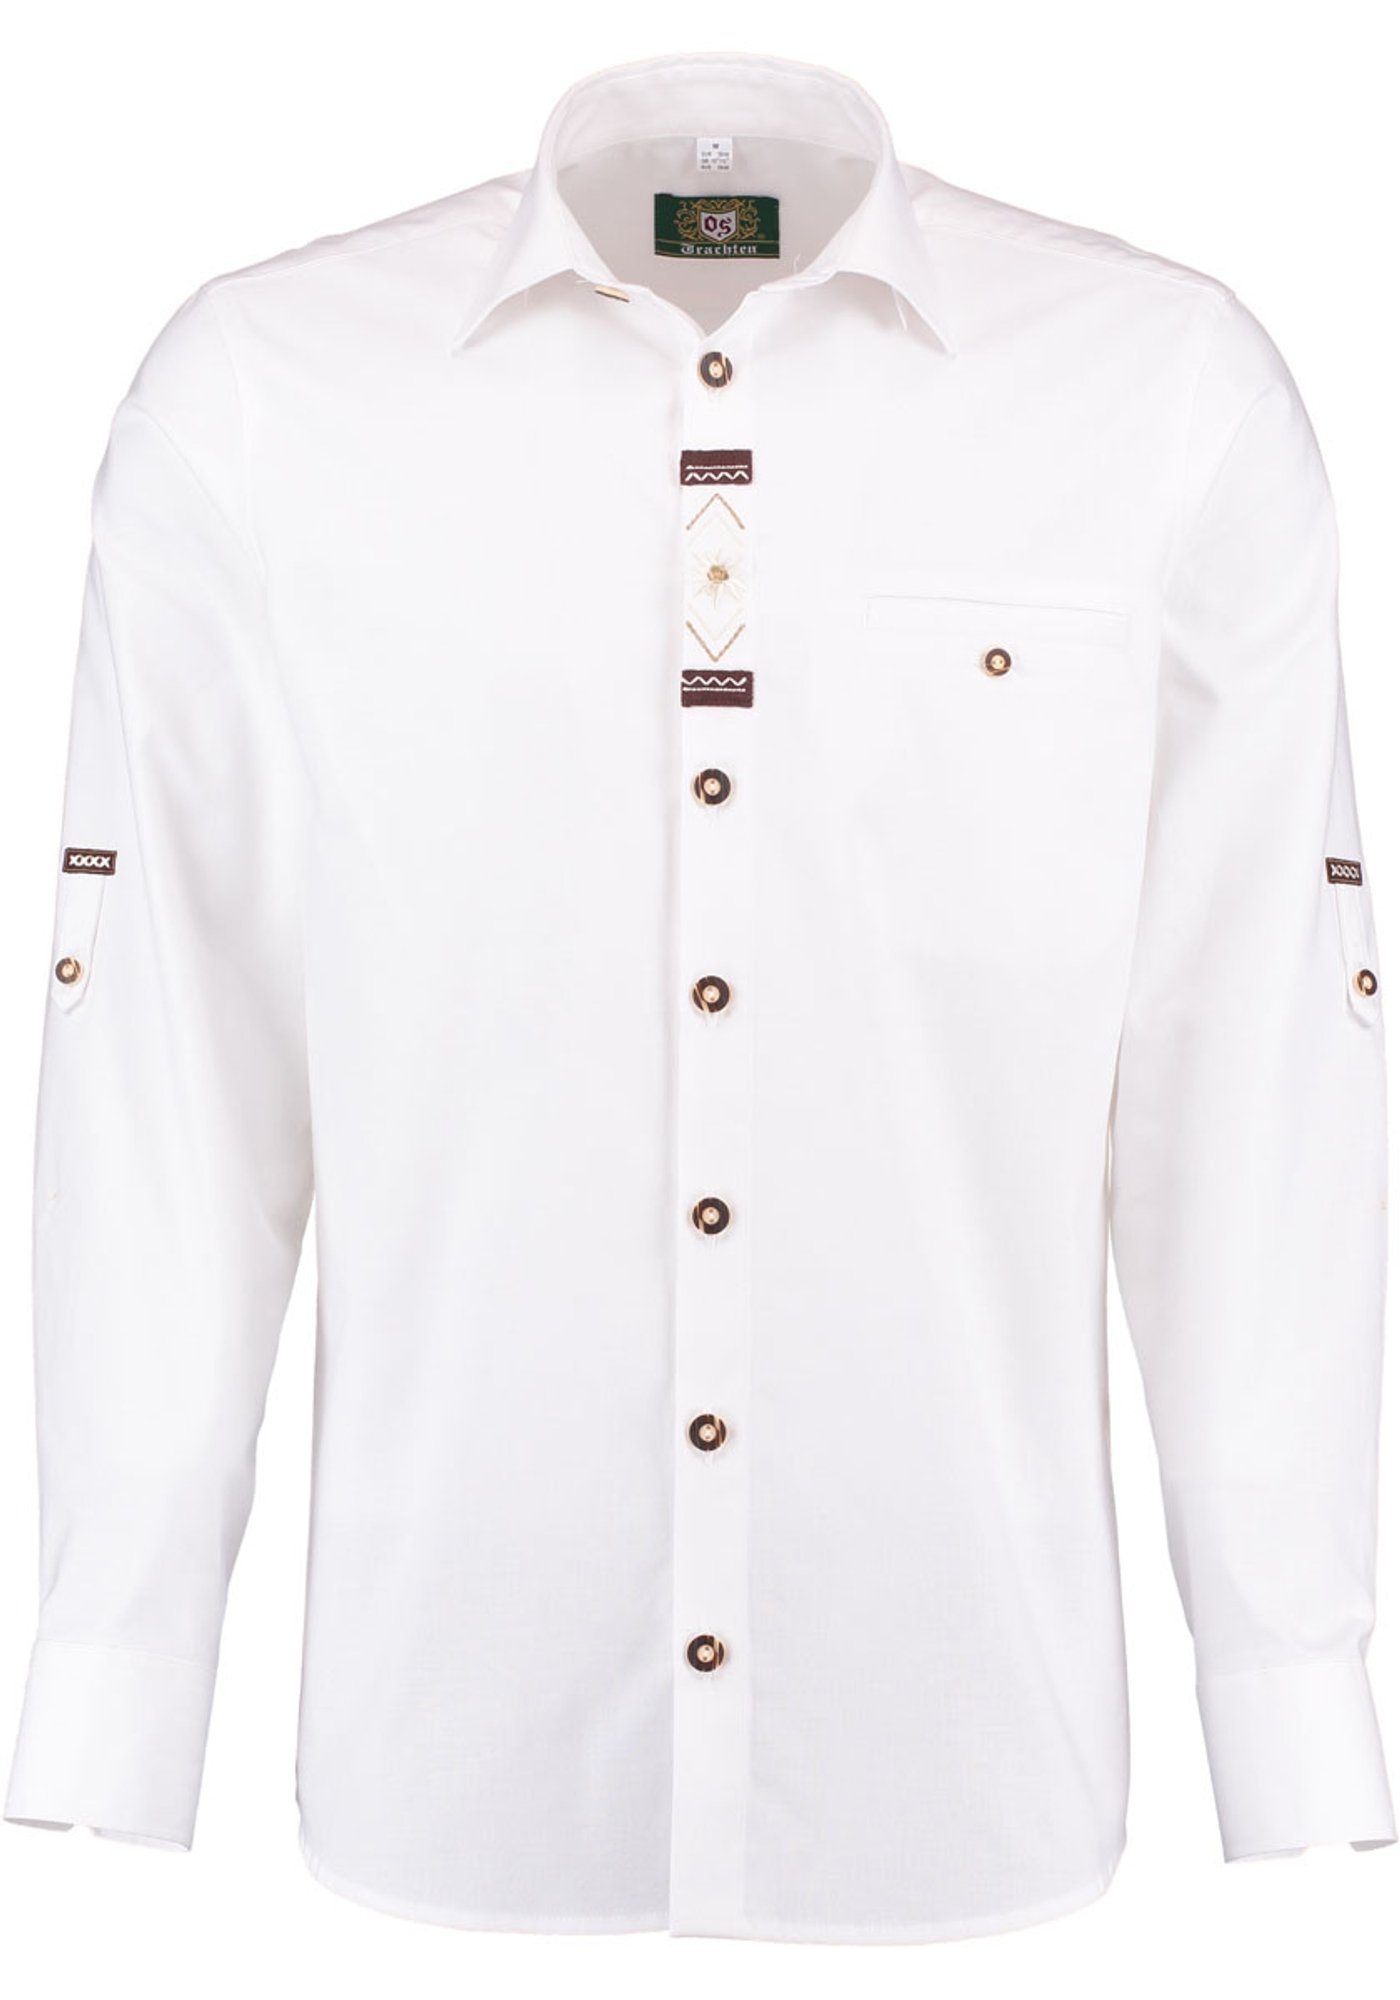 OS-Trachten Trachtenhemd Zigoyo Langarmhemd mit Edelweiß-Stickerei auf der Knopfleiste